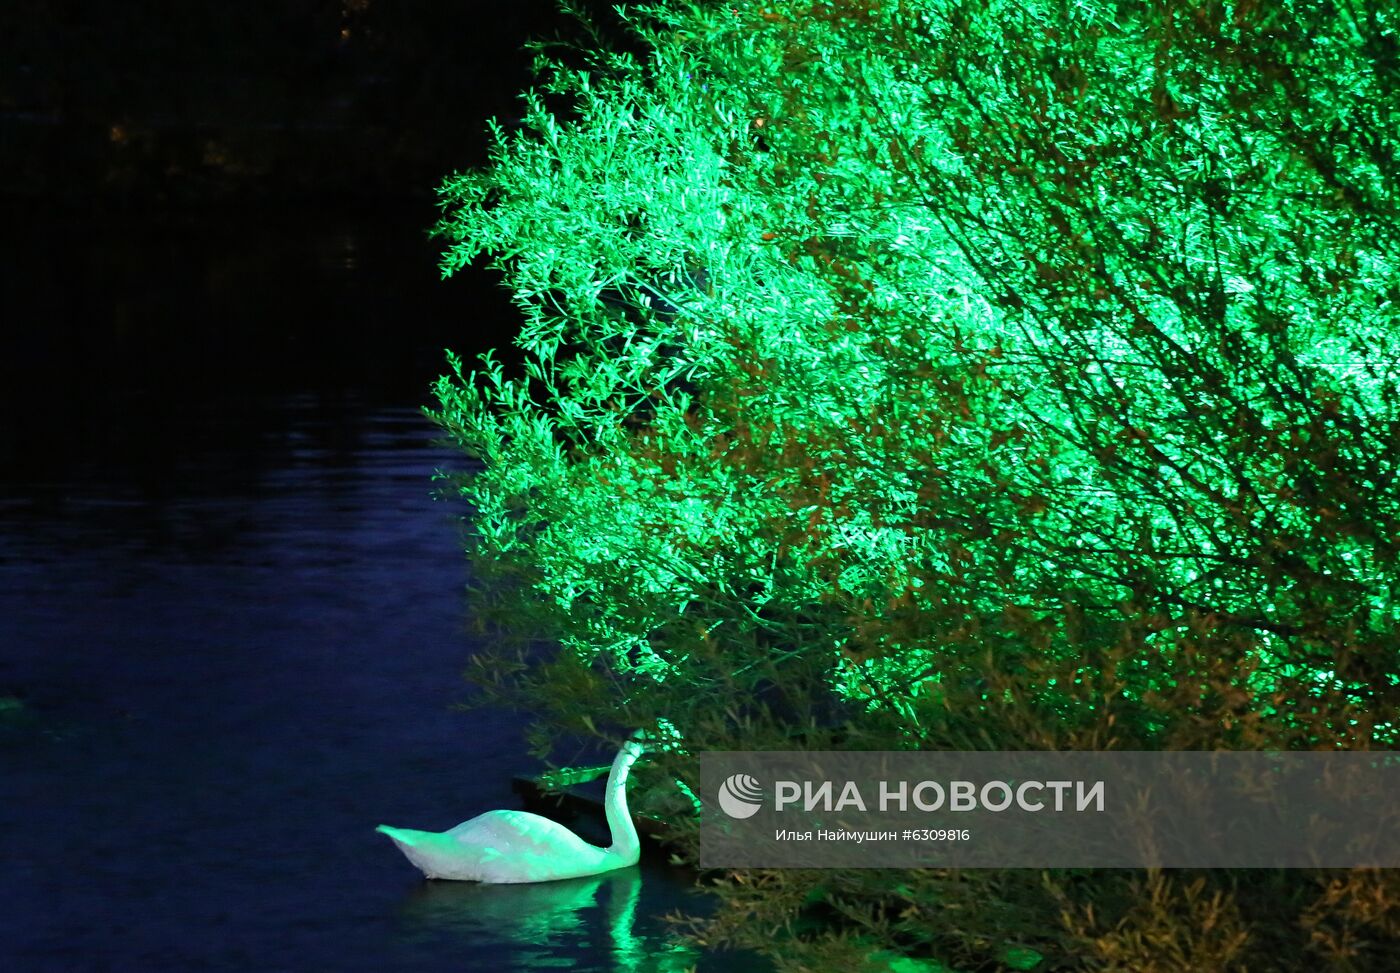 20-летие парка флоры и фауны "Роев ручей" в Красноярске